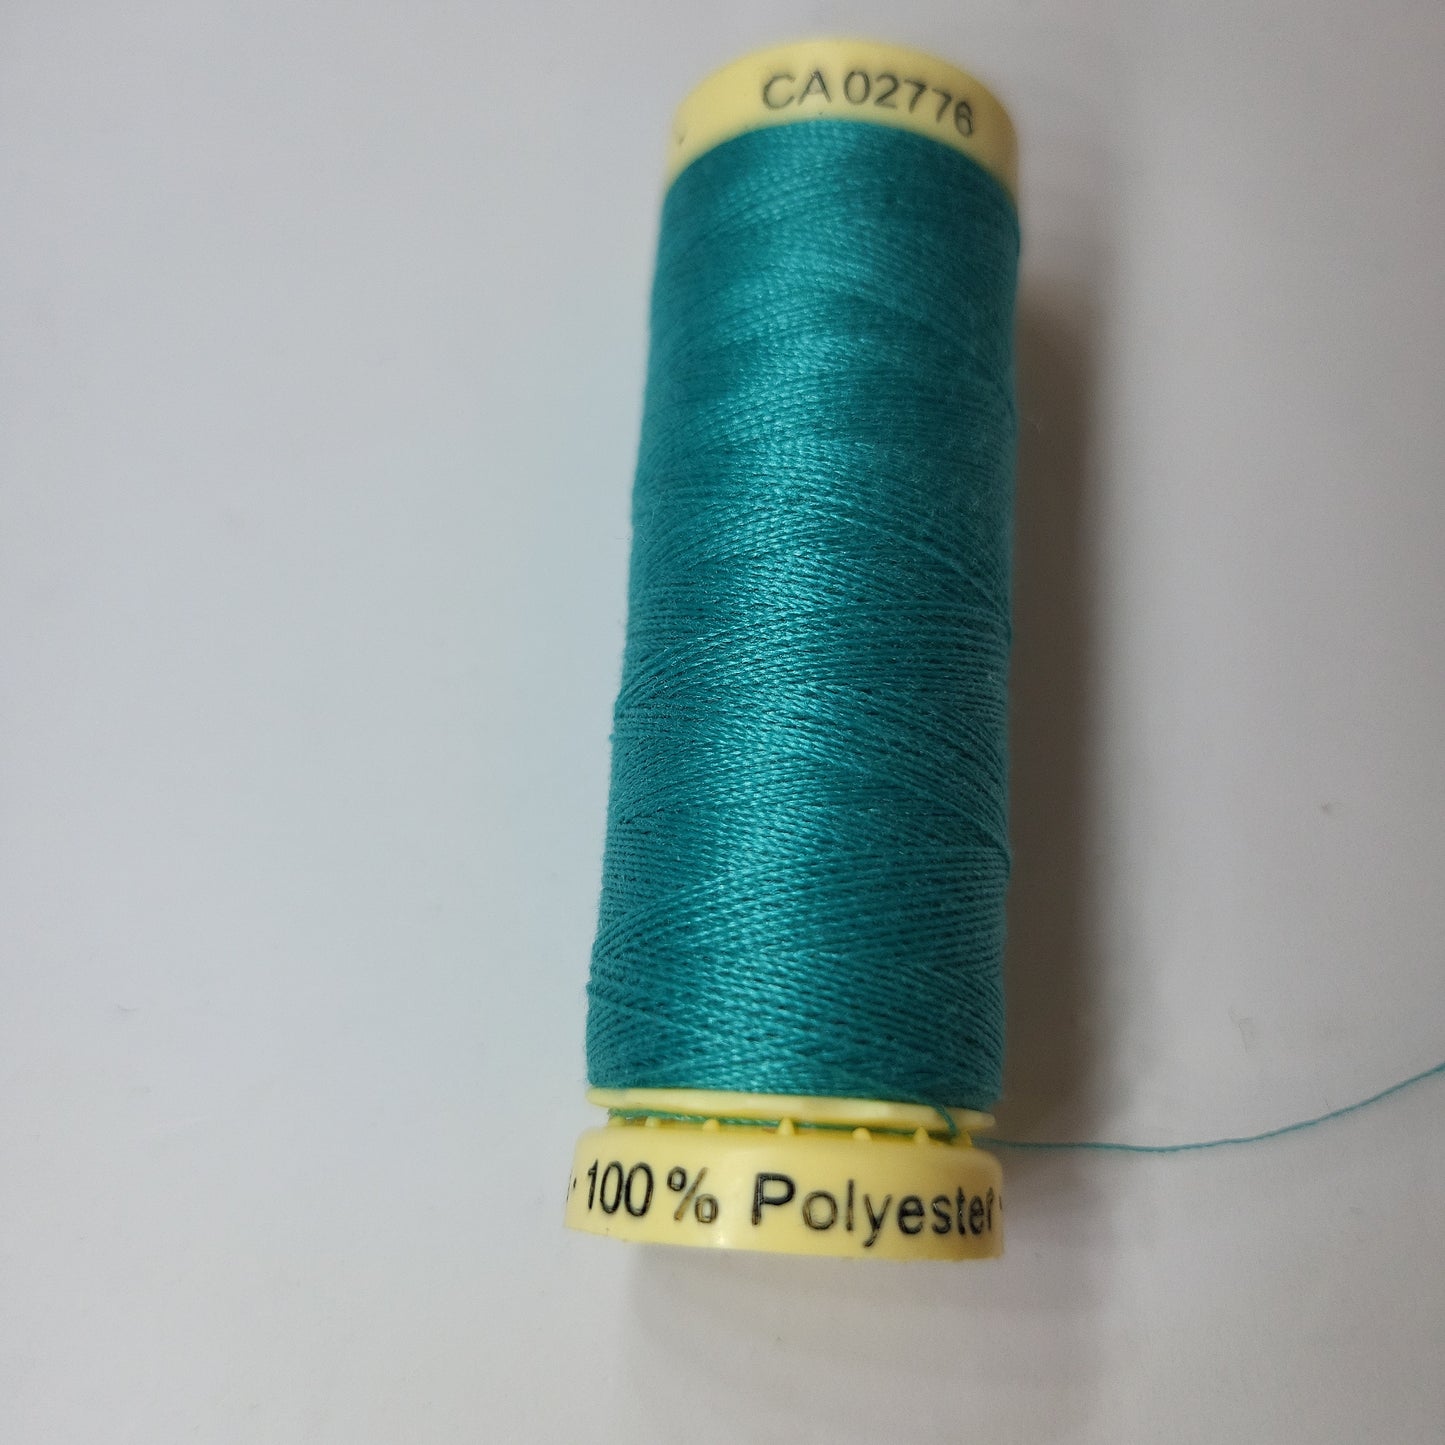 55 Sew-All Thread